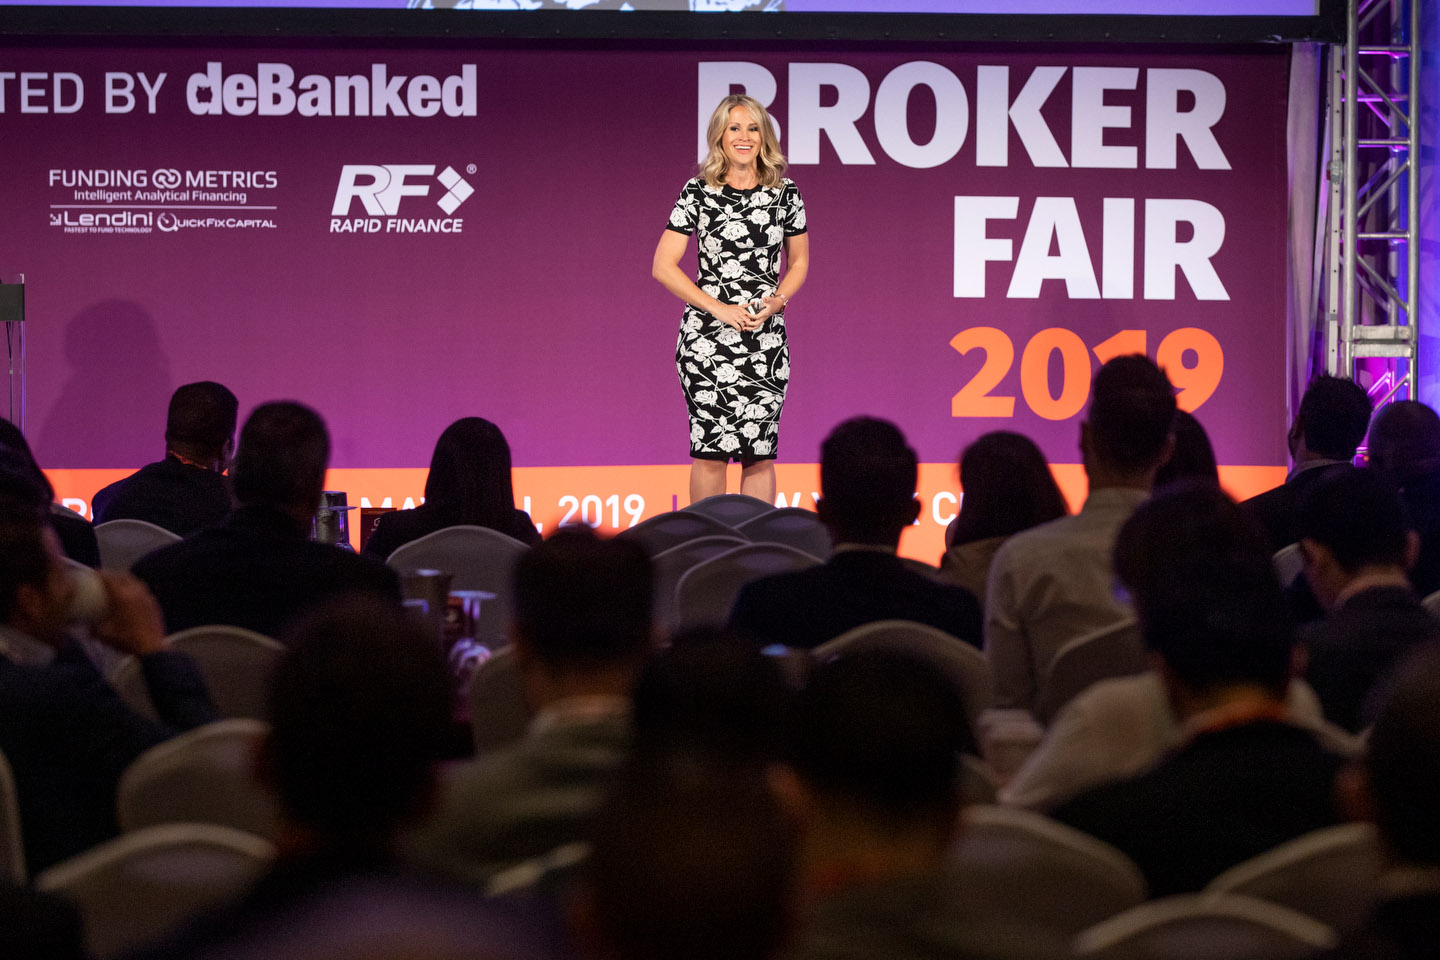 Broker Fair 2019 - Presented by deBanked - 375